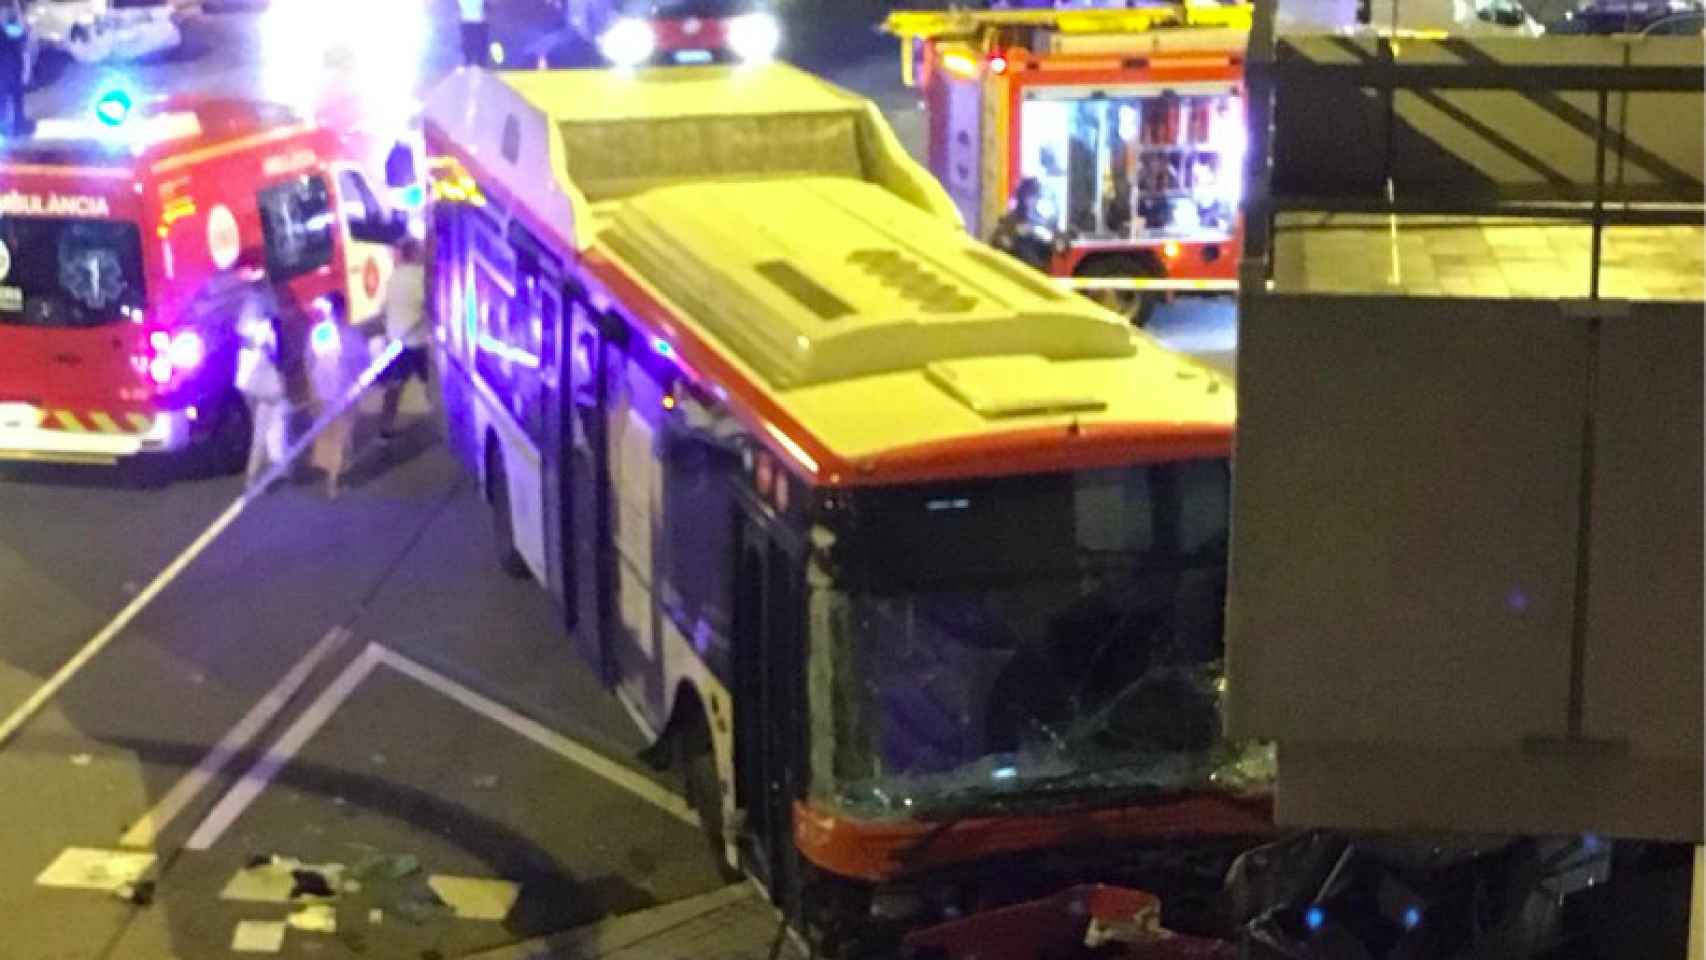 Espectacular accidente de bus mientras el conductor estaba en el lavabo